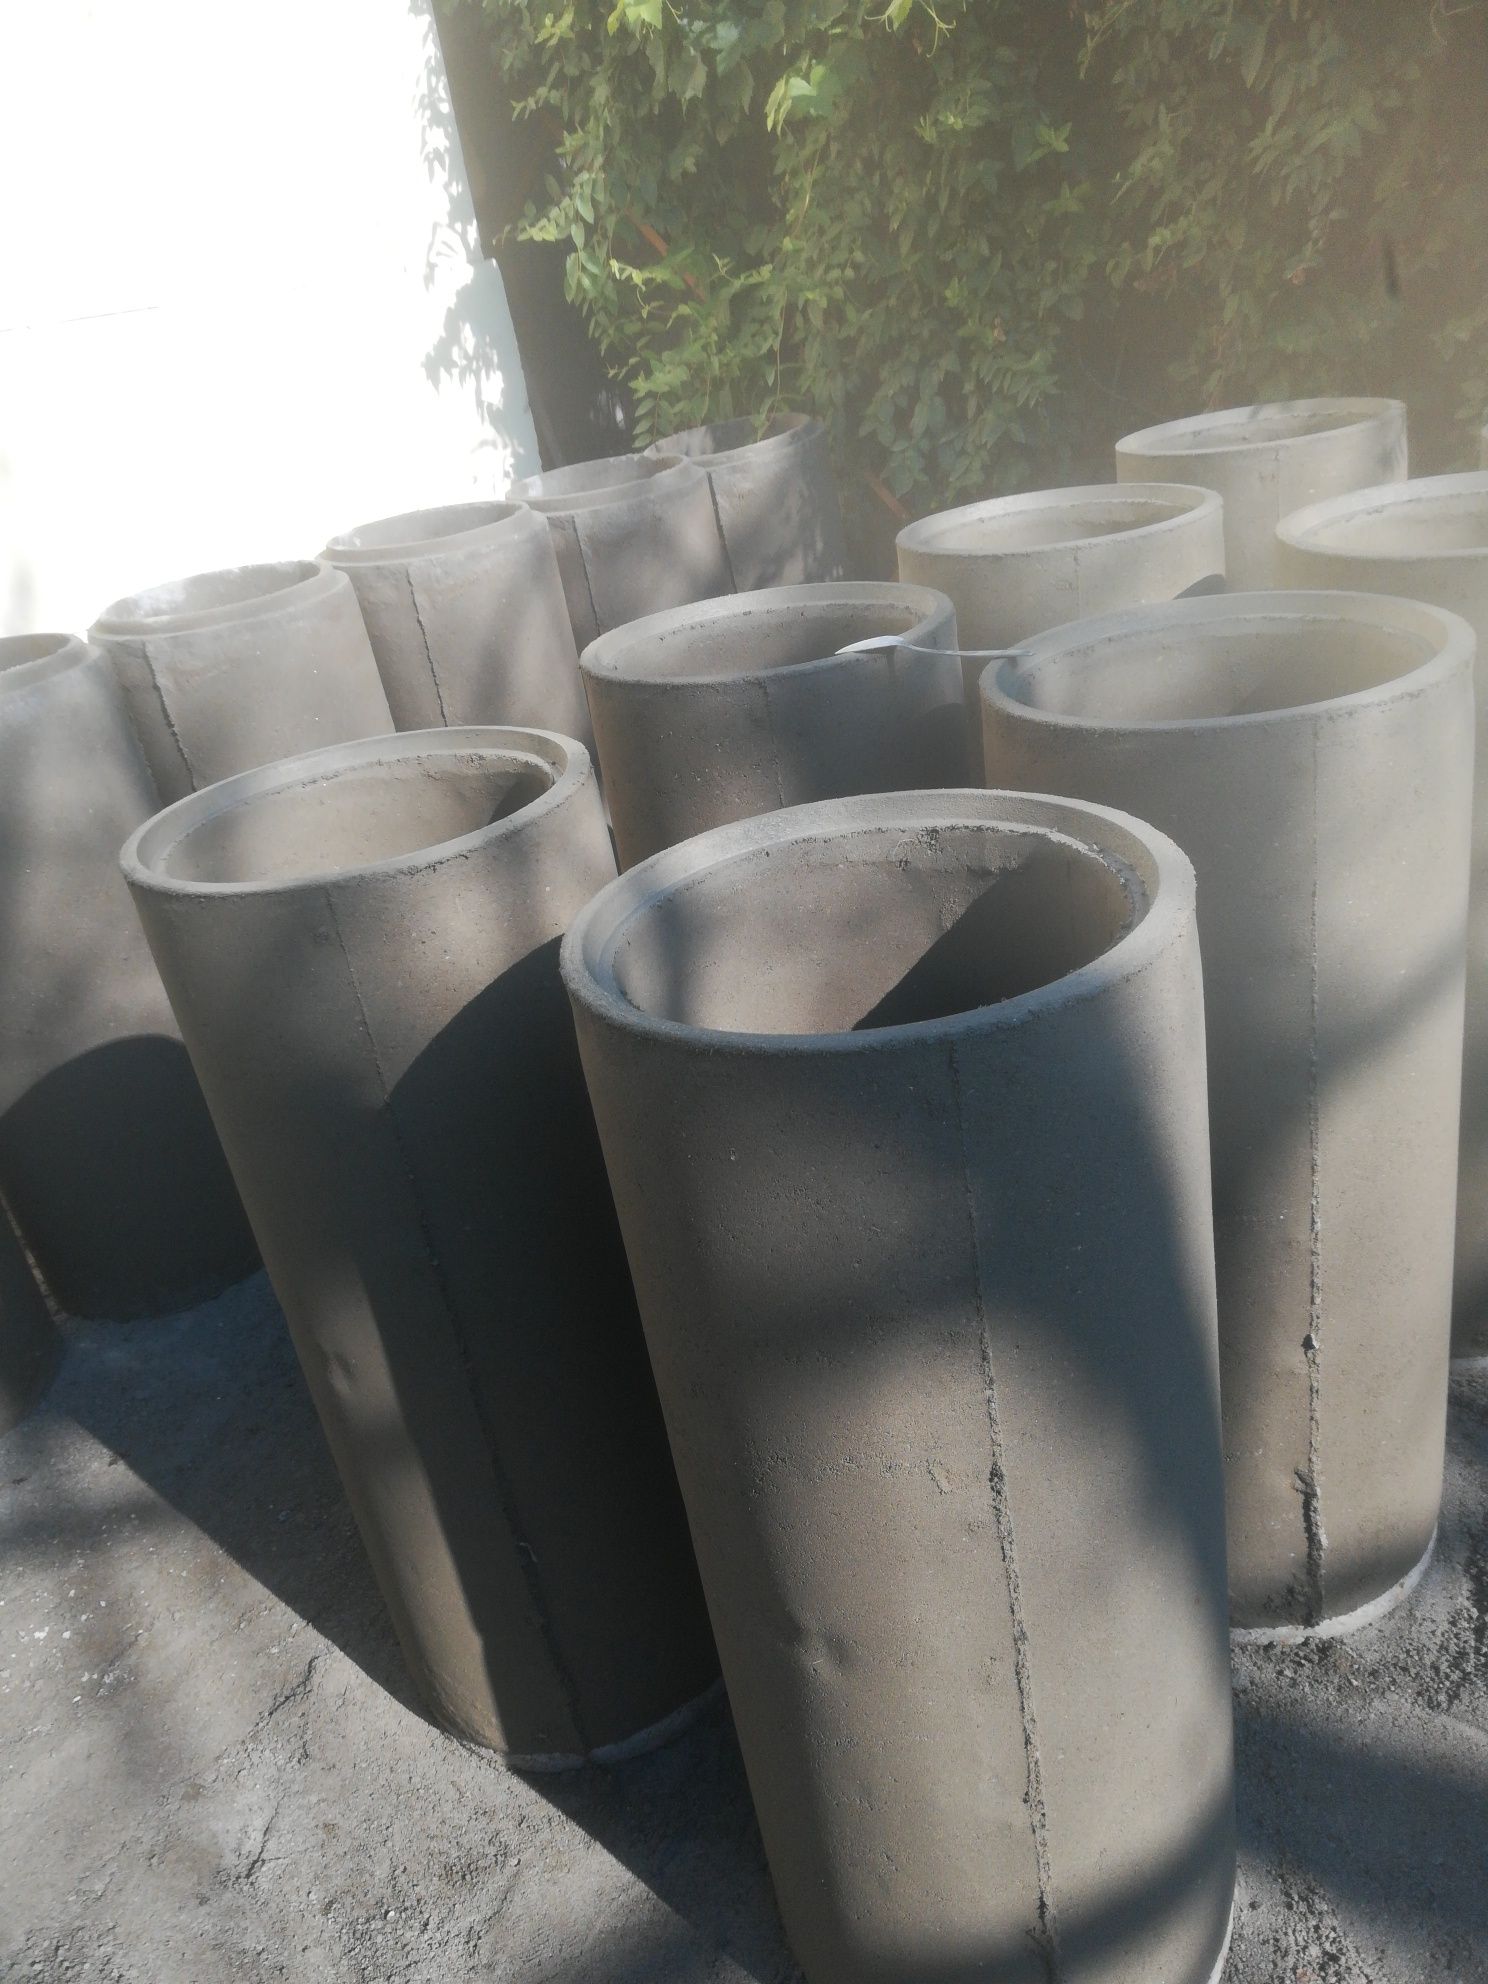 Tuburii beton/podisca